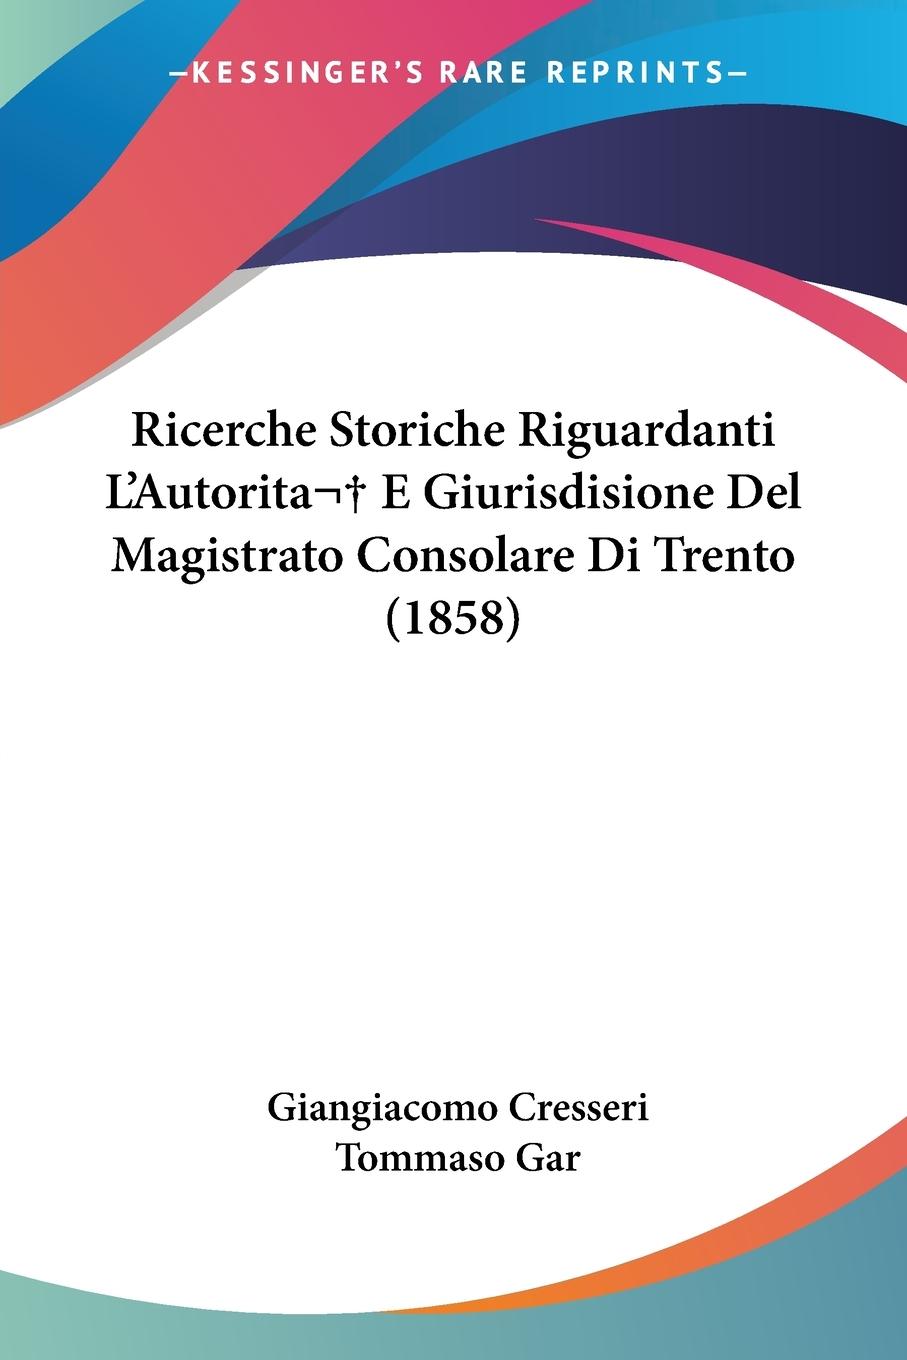 Ricerche Storiche Riguardanti L Autorita E Giurisdisione Del Magistrato Consolare Di Trento (1858) - Cresseri, Giangiacomo Gar, Tommaso